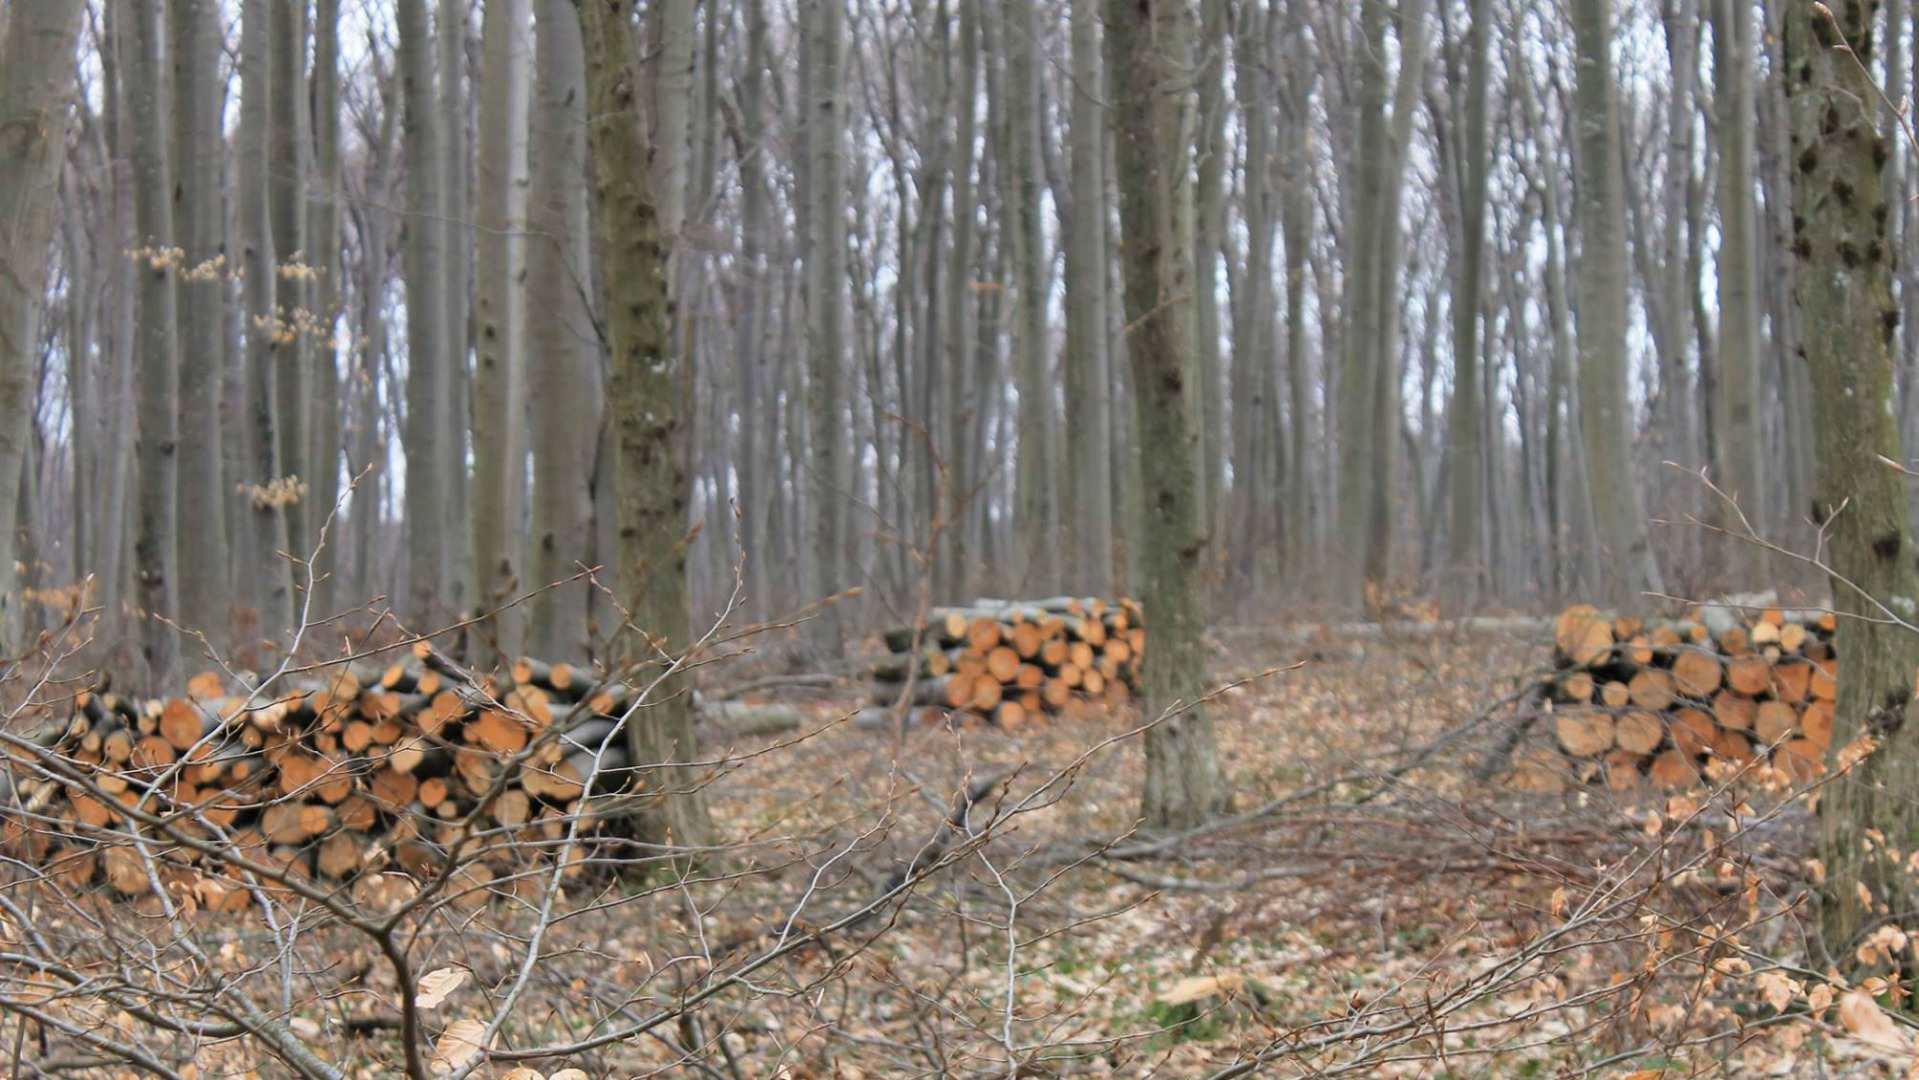 ЮЗДП отчита: Най-много  нарушения има в горите на Самоков. В Дупница бракониерските сечи намаляват!